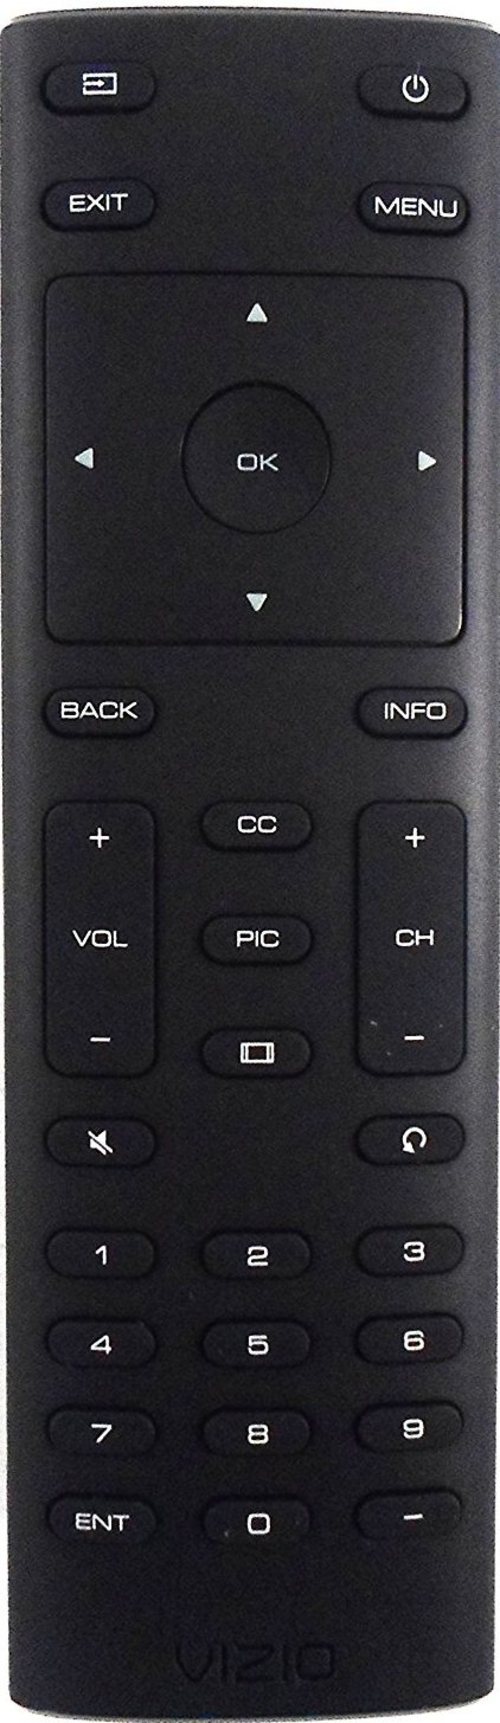 Vizio XRT134 HD TV Remote Control - Black